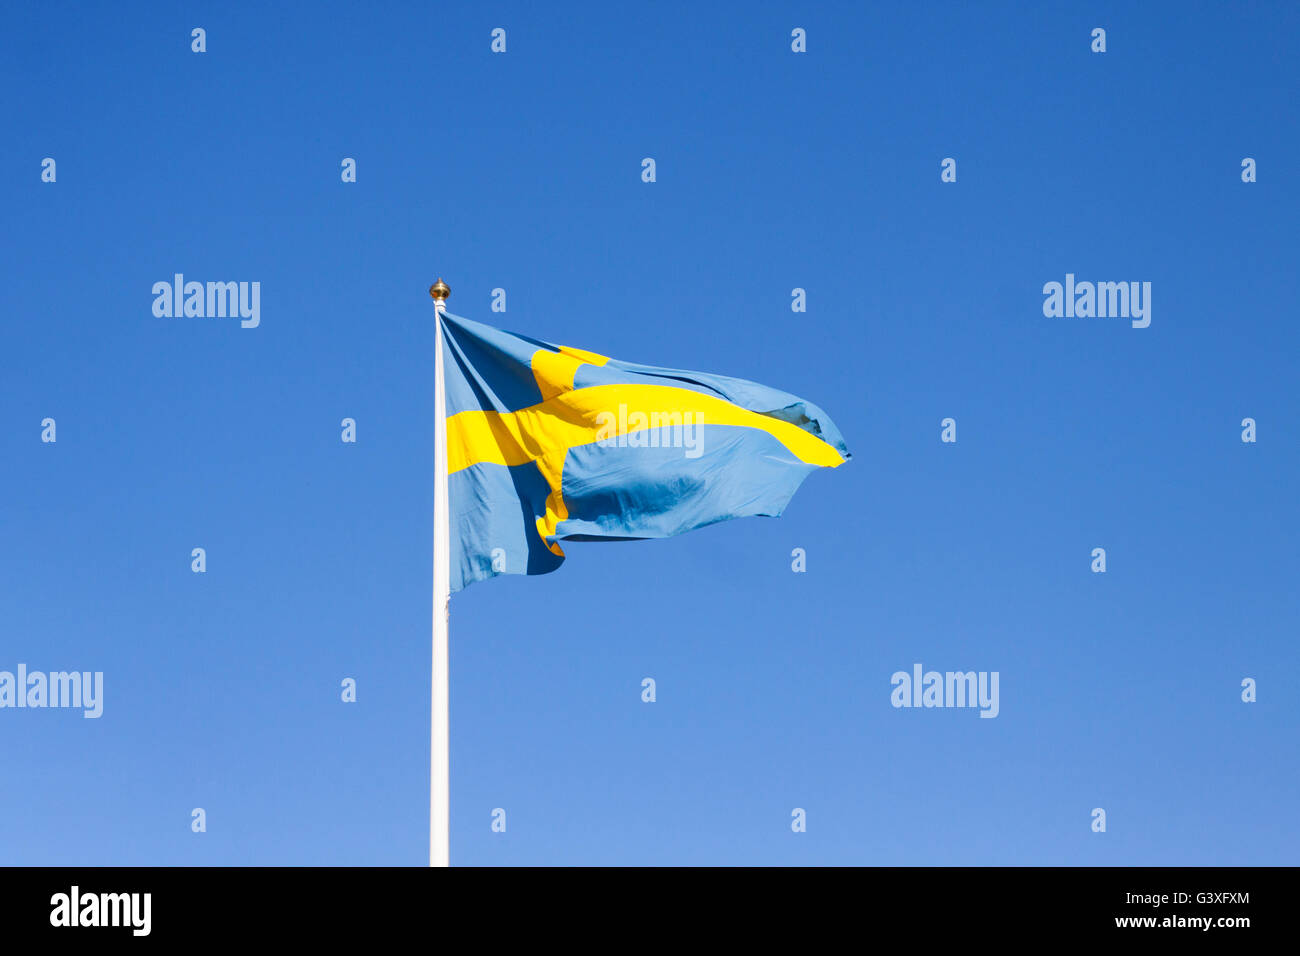 Flagpole with Swedish flag Stock Photo